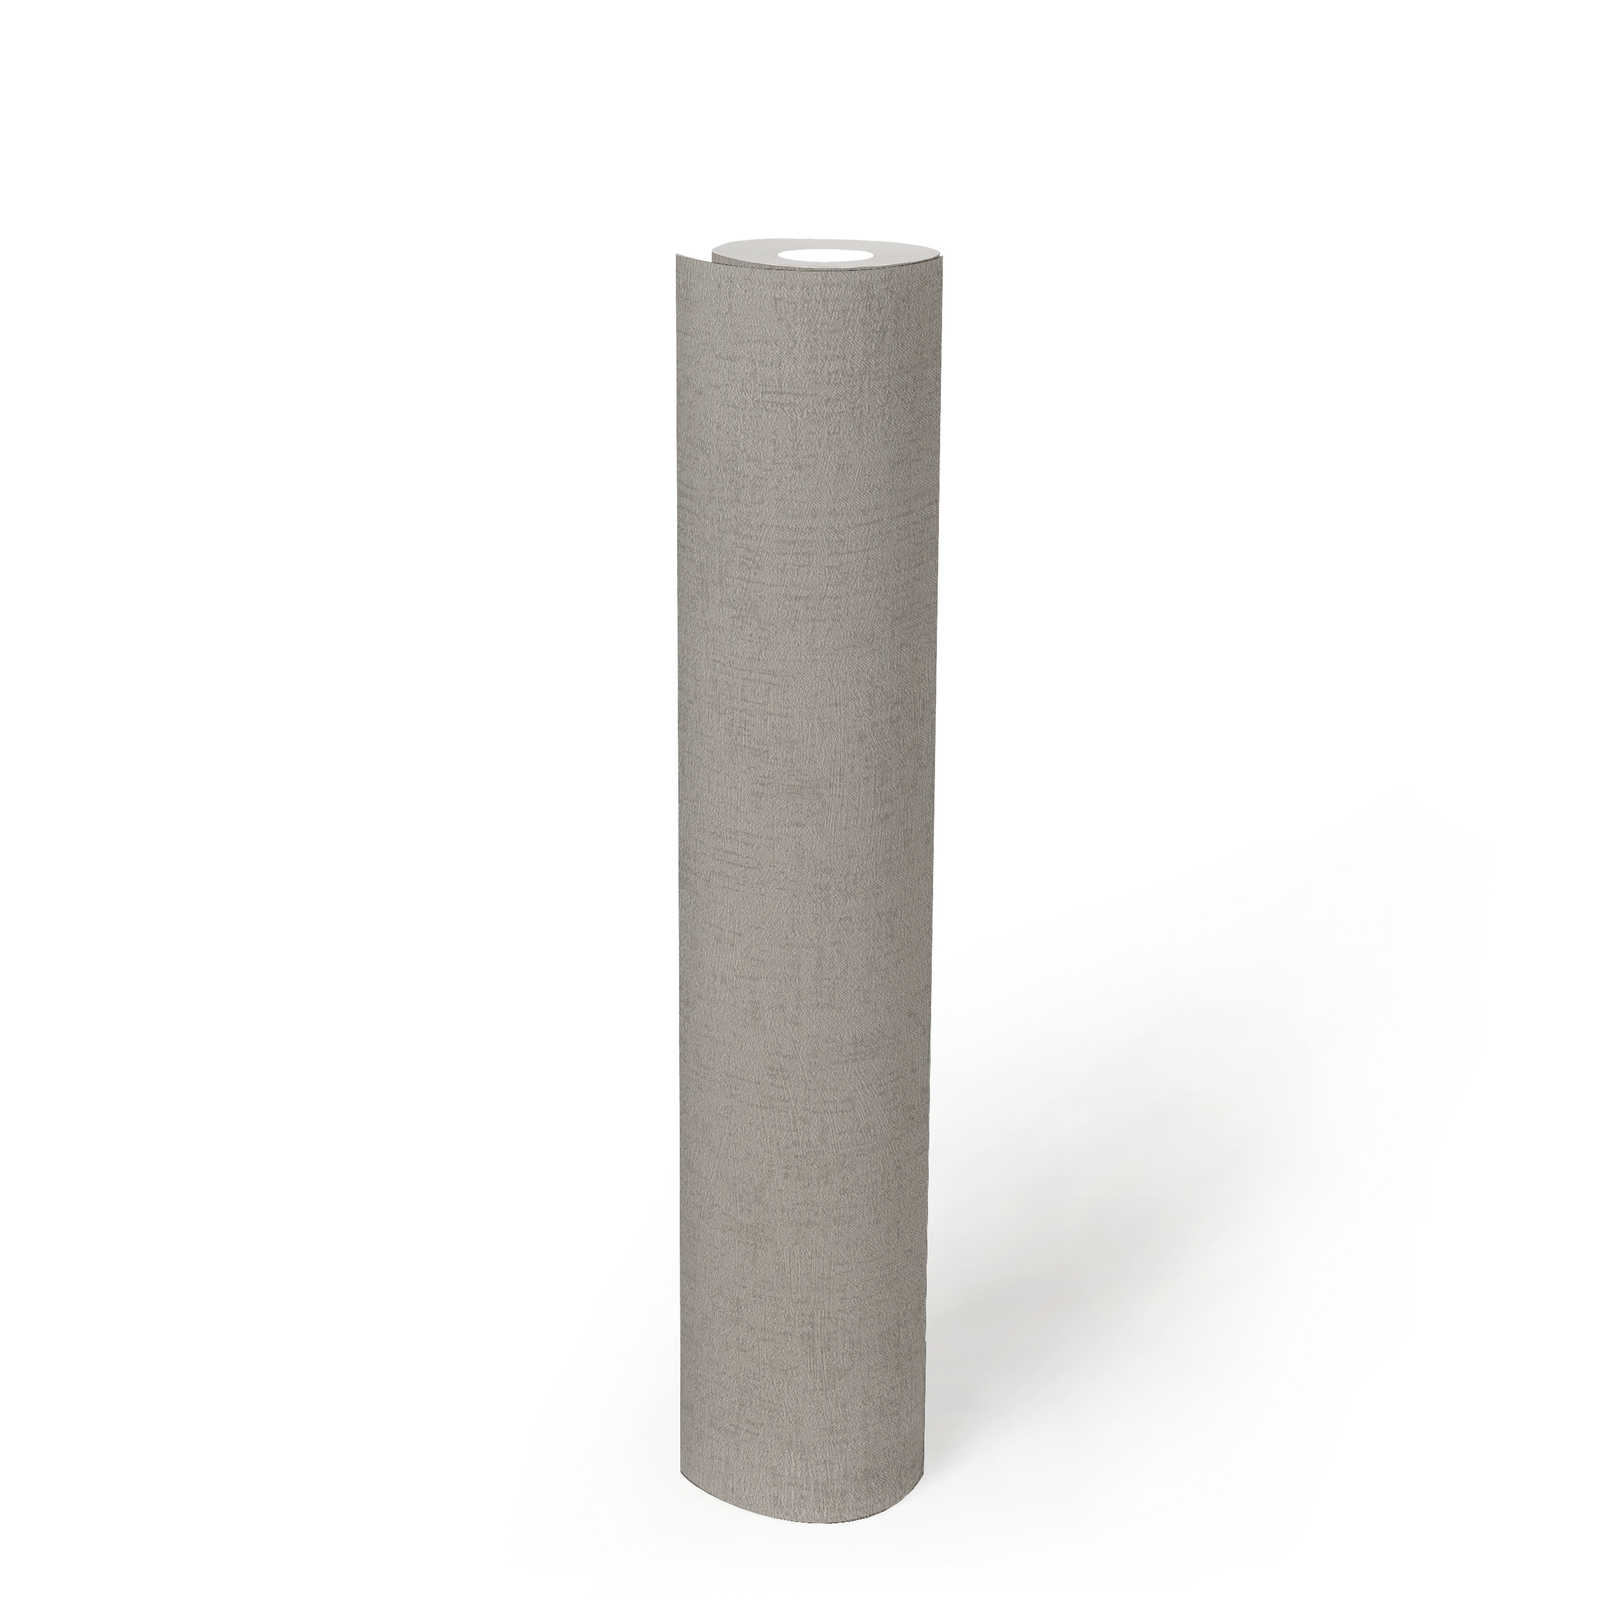             Glanzend vliesbehang greige met structuurdesign - grijs, metallic
        